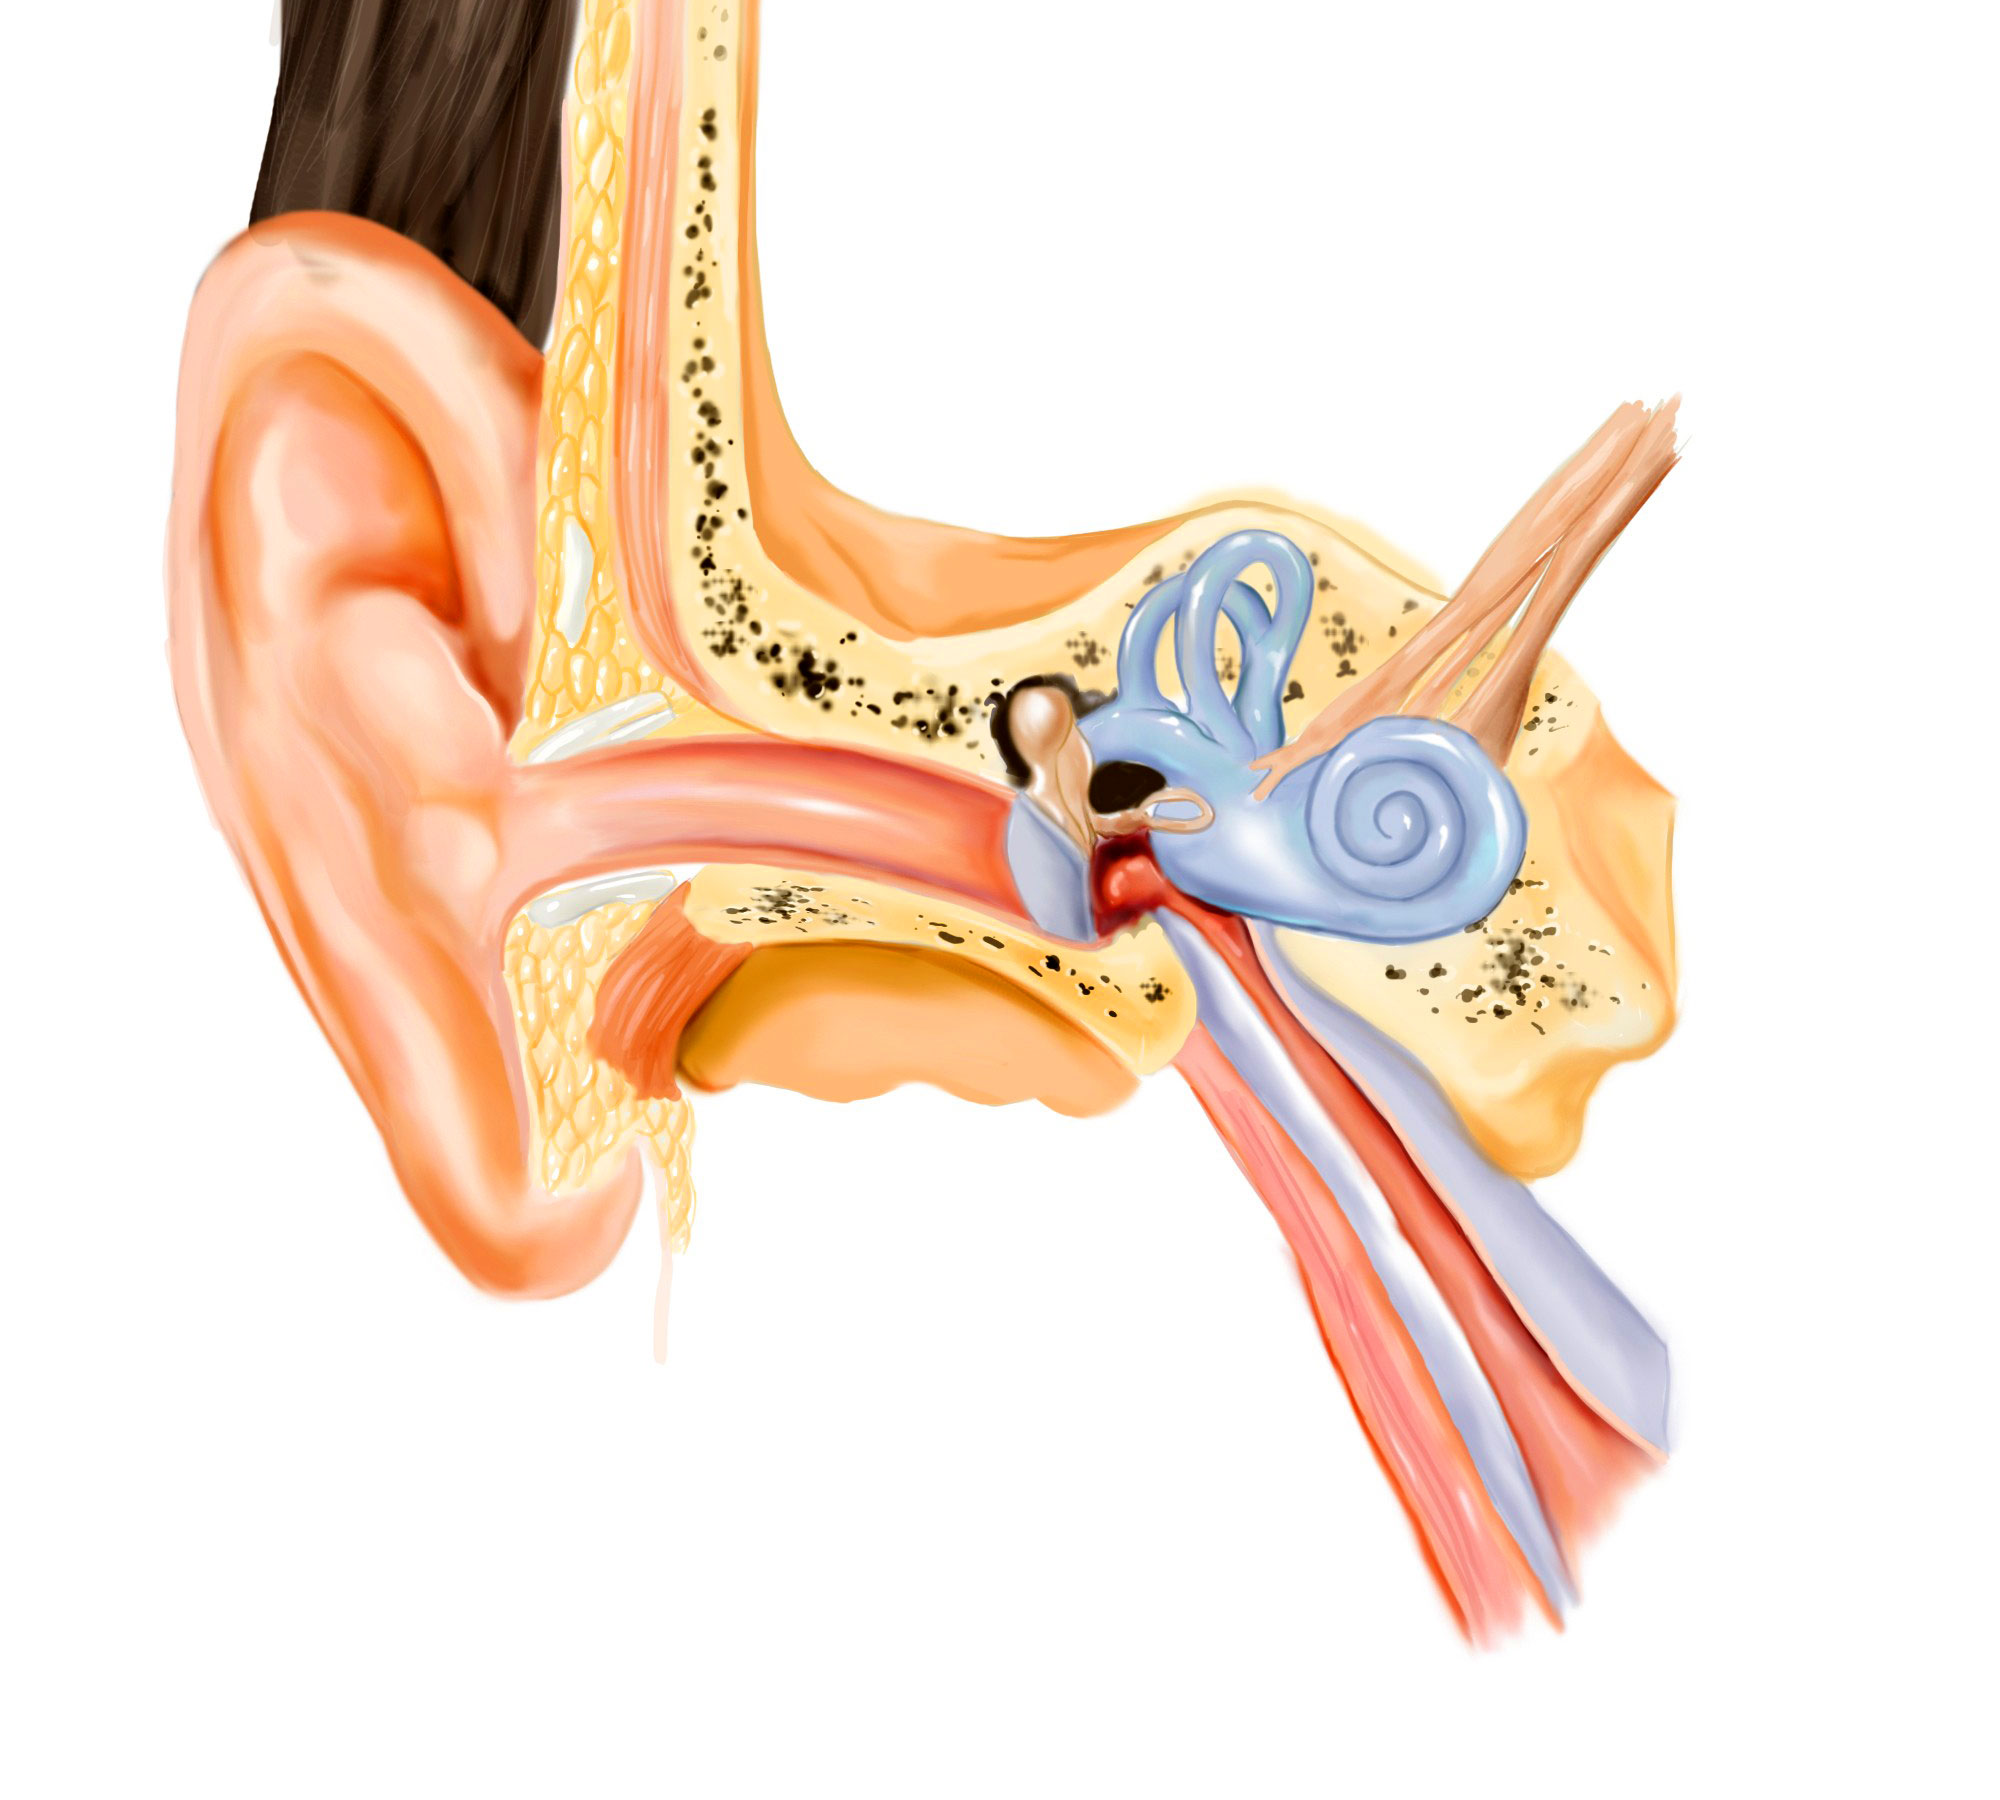 Хронический тубоотит. Строение уха евстахиева труба. Тубоотит барабанная перепонка. Анатомия уха евстахиева труба.